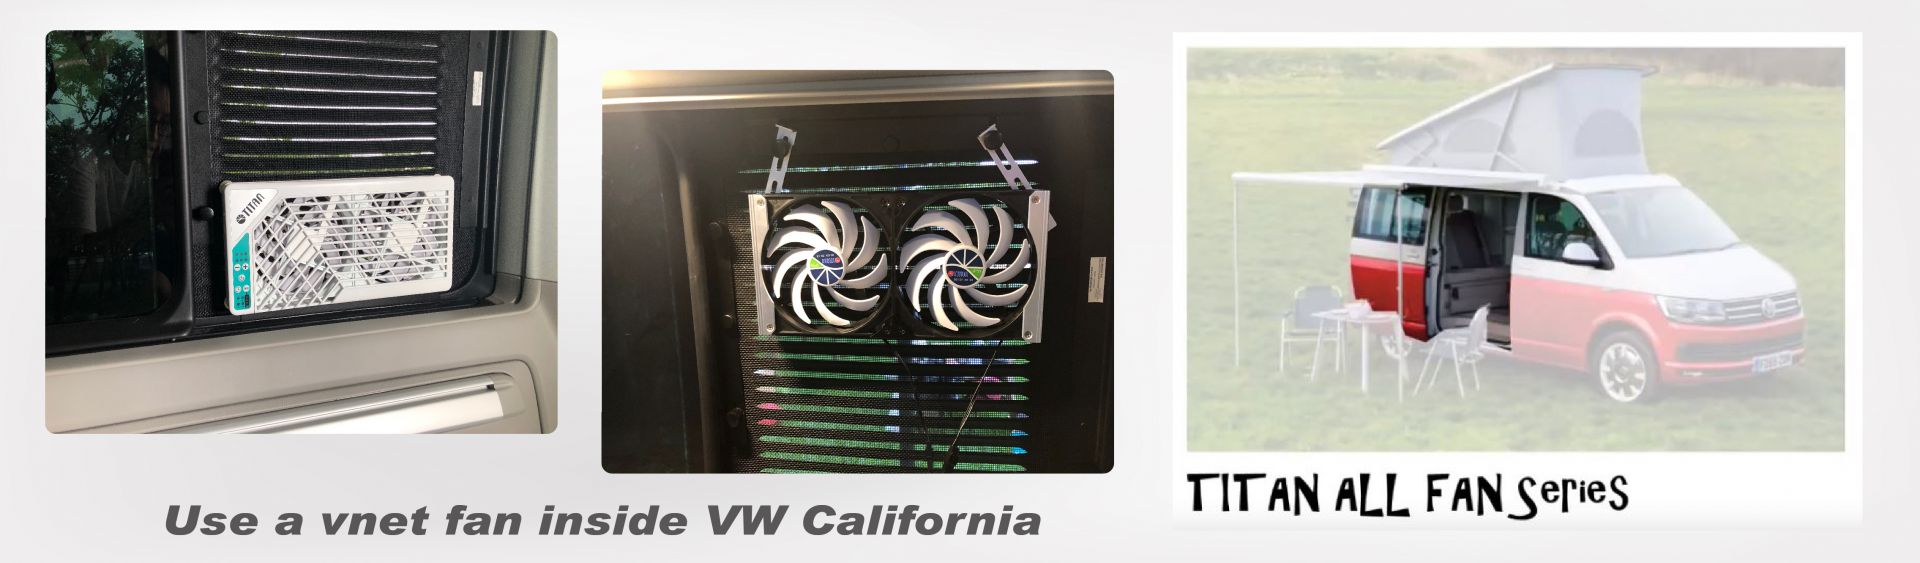 Внутренняя вентиляция VW California